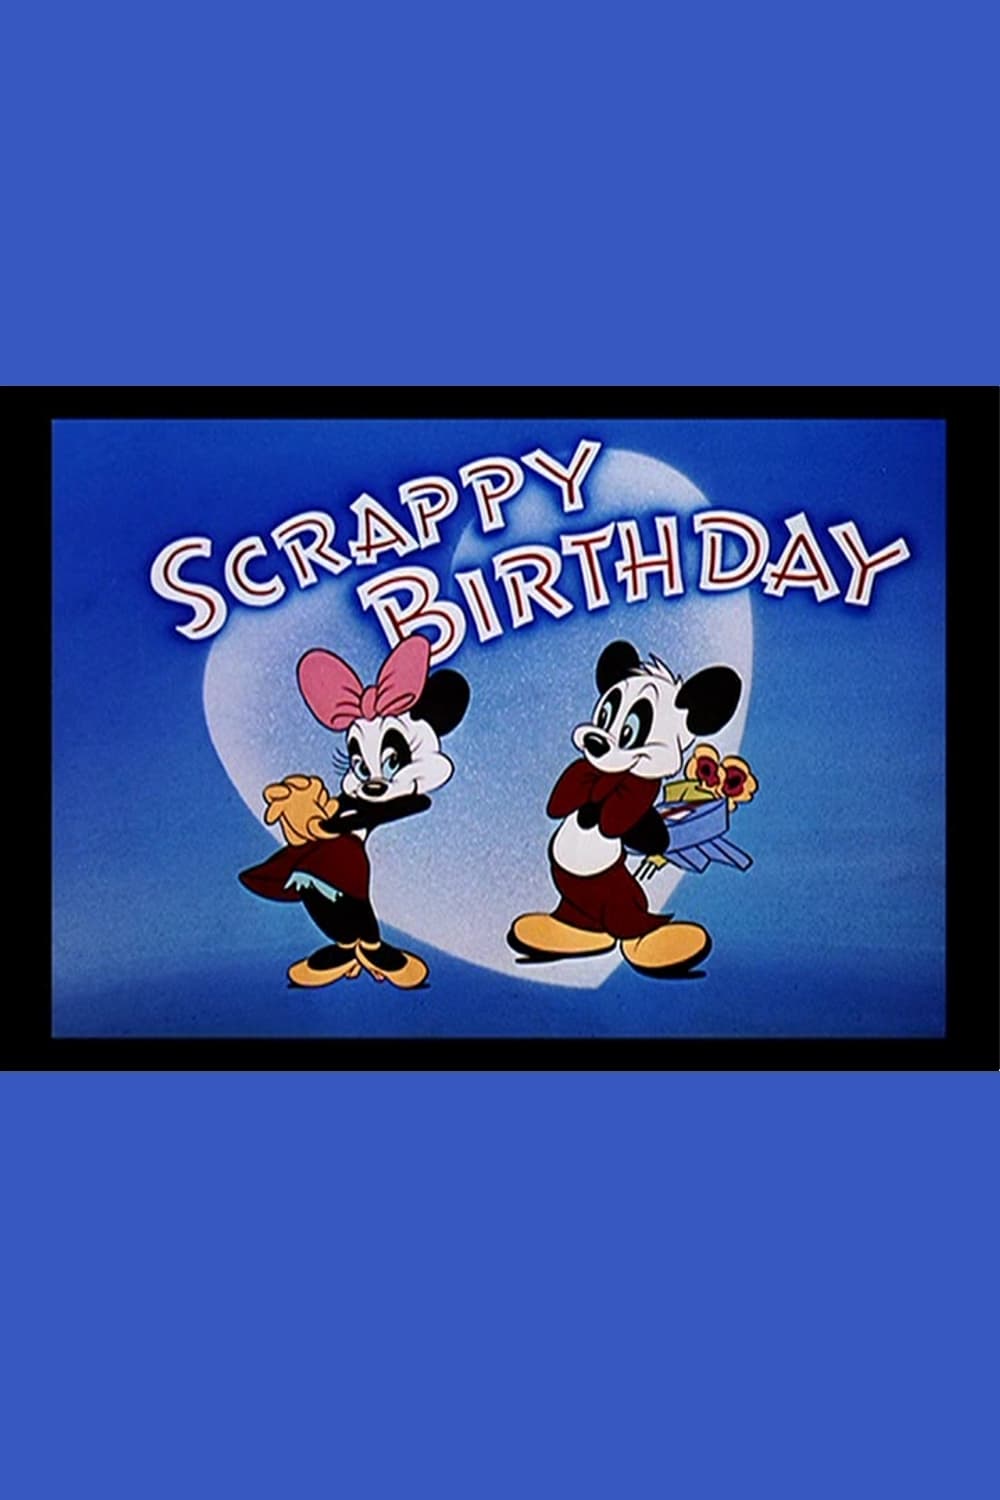 Scrappy Birthday (1949)